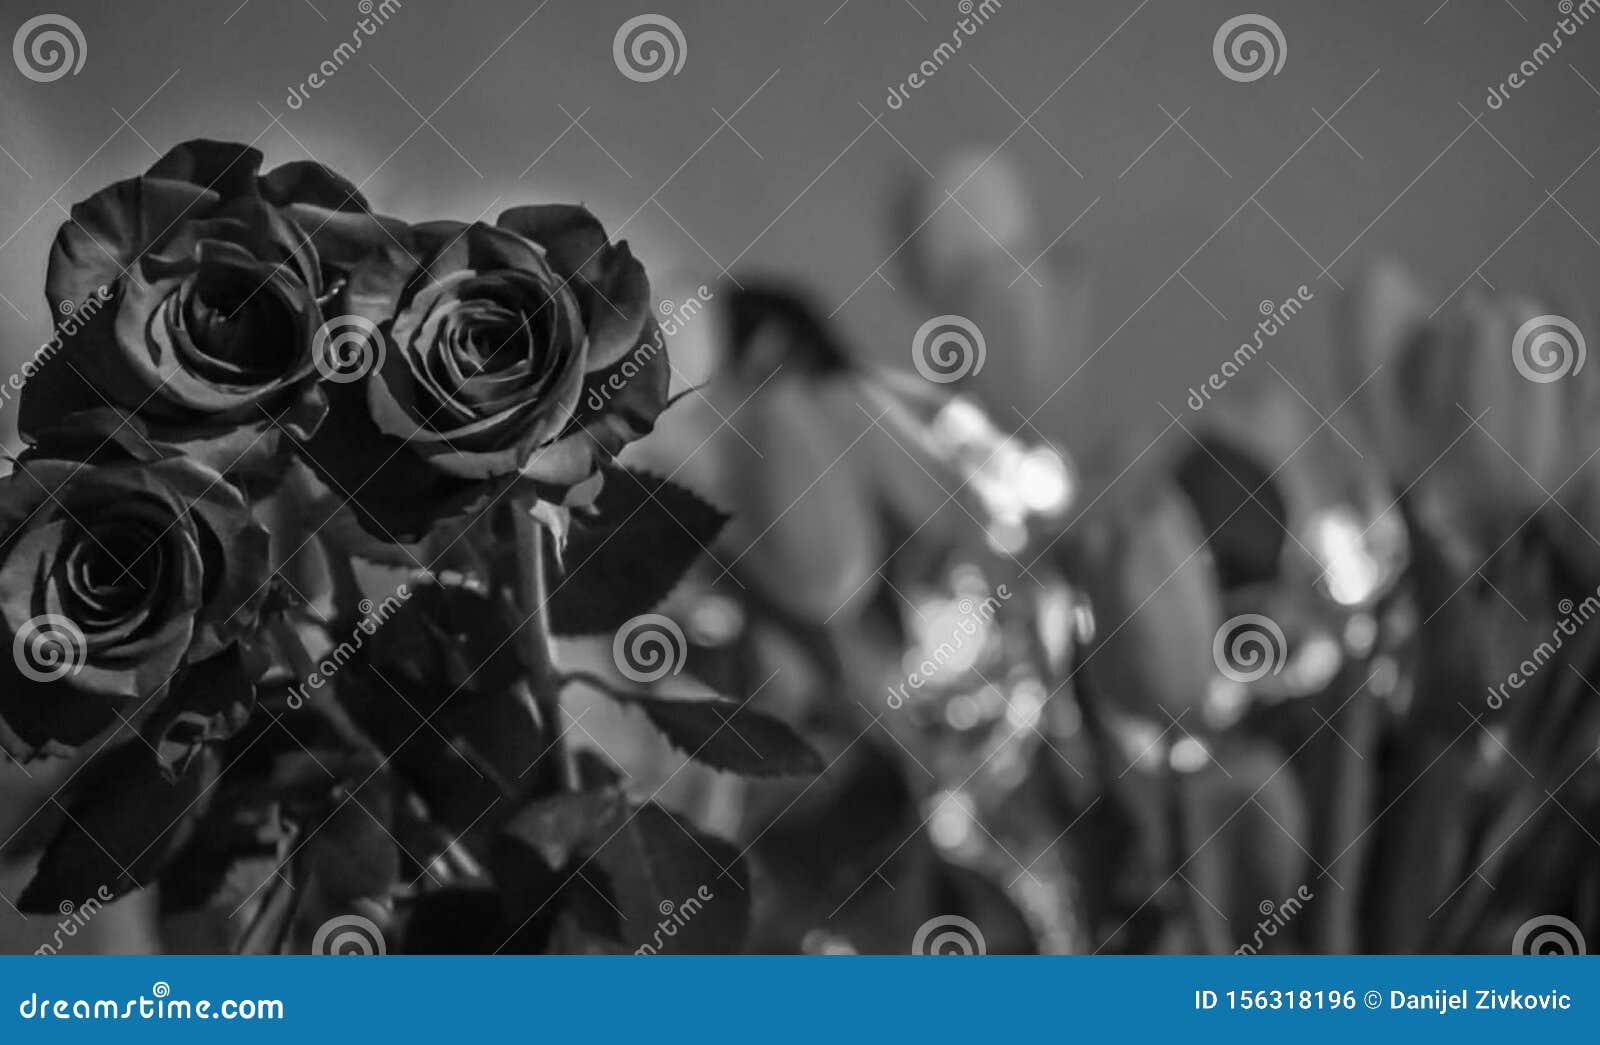 black roses in focus